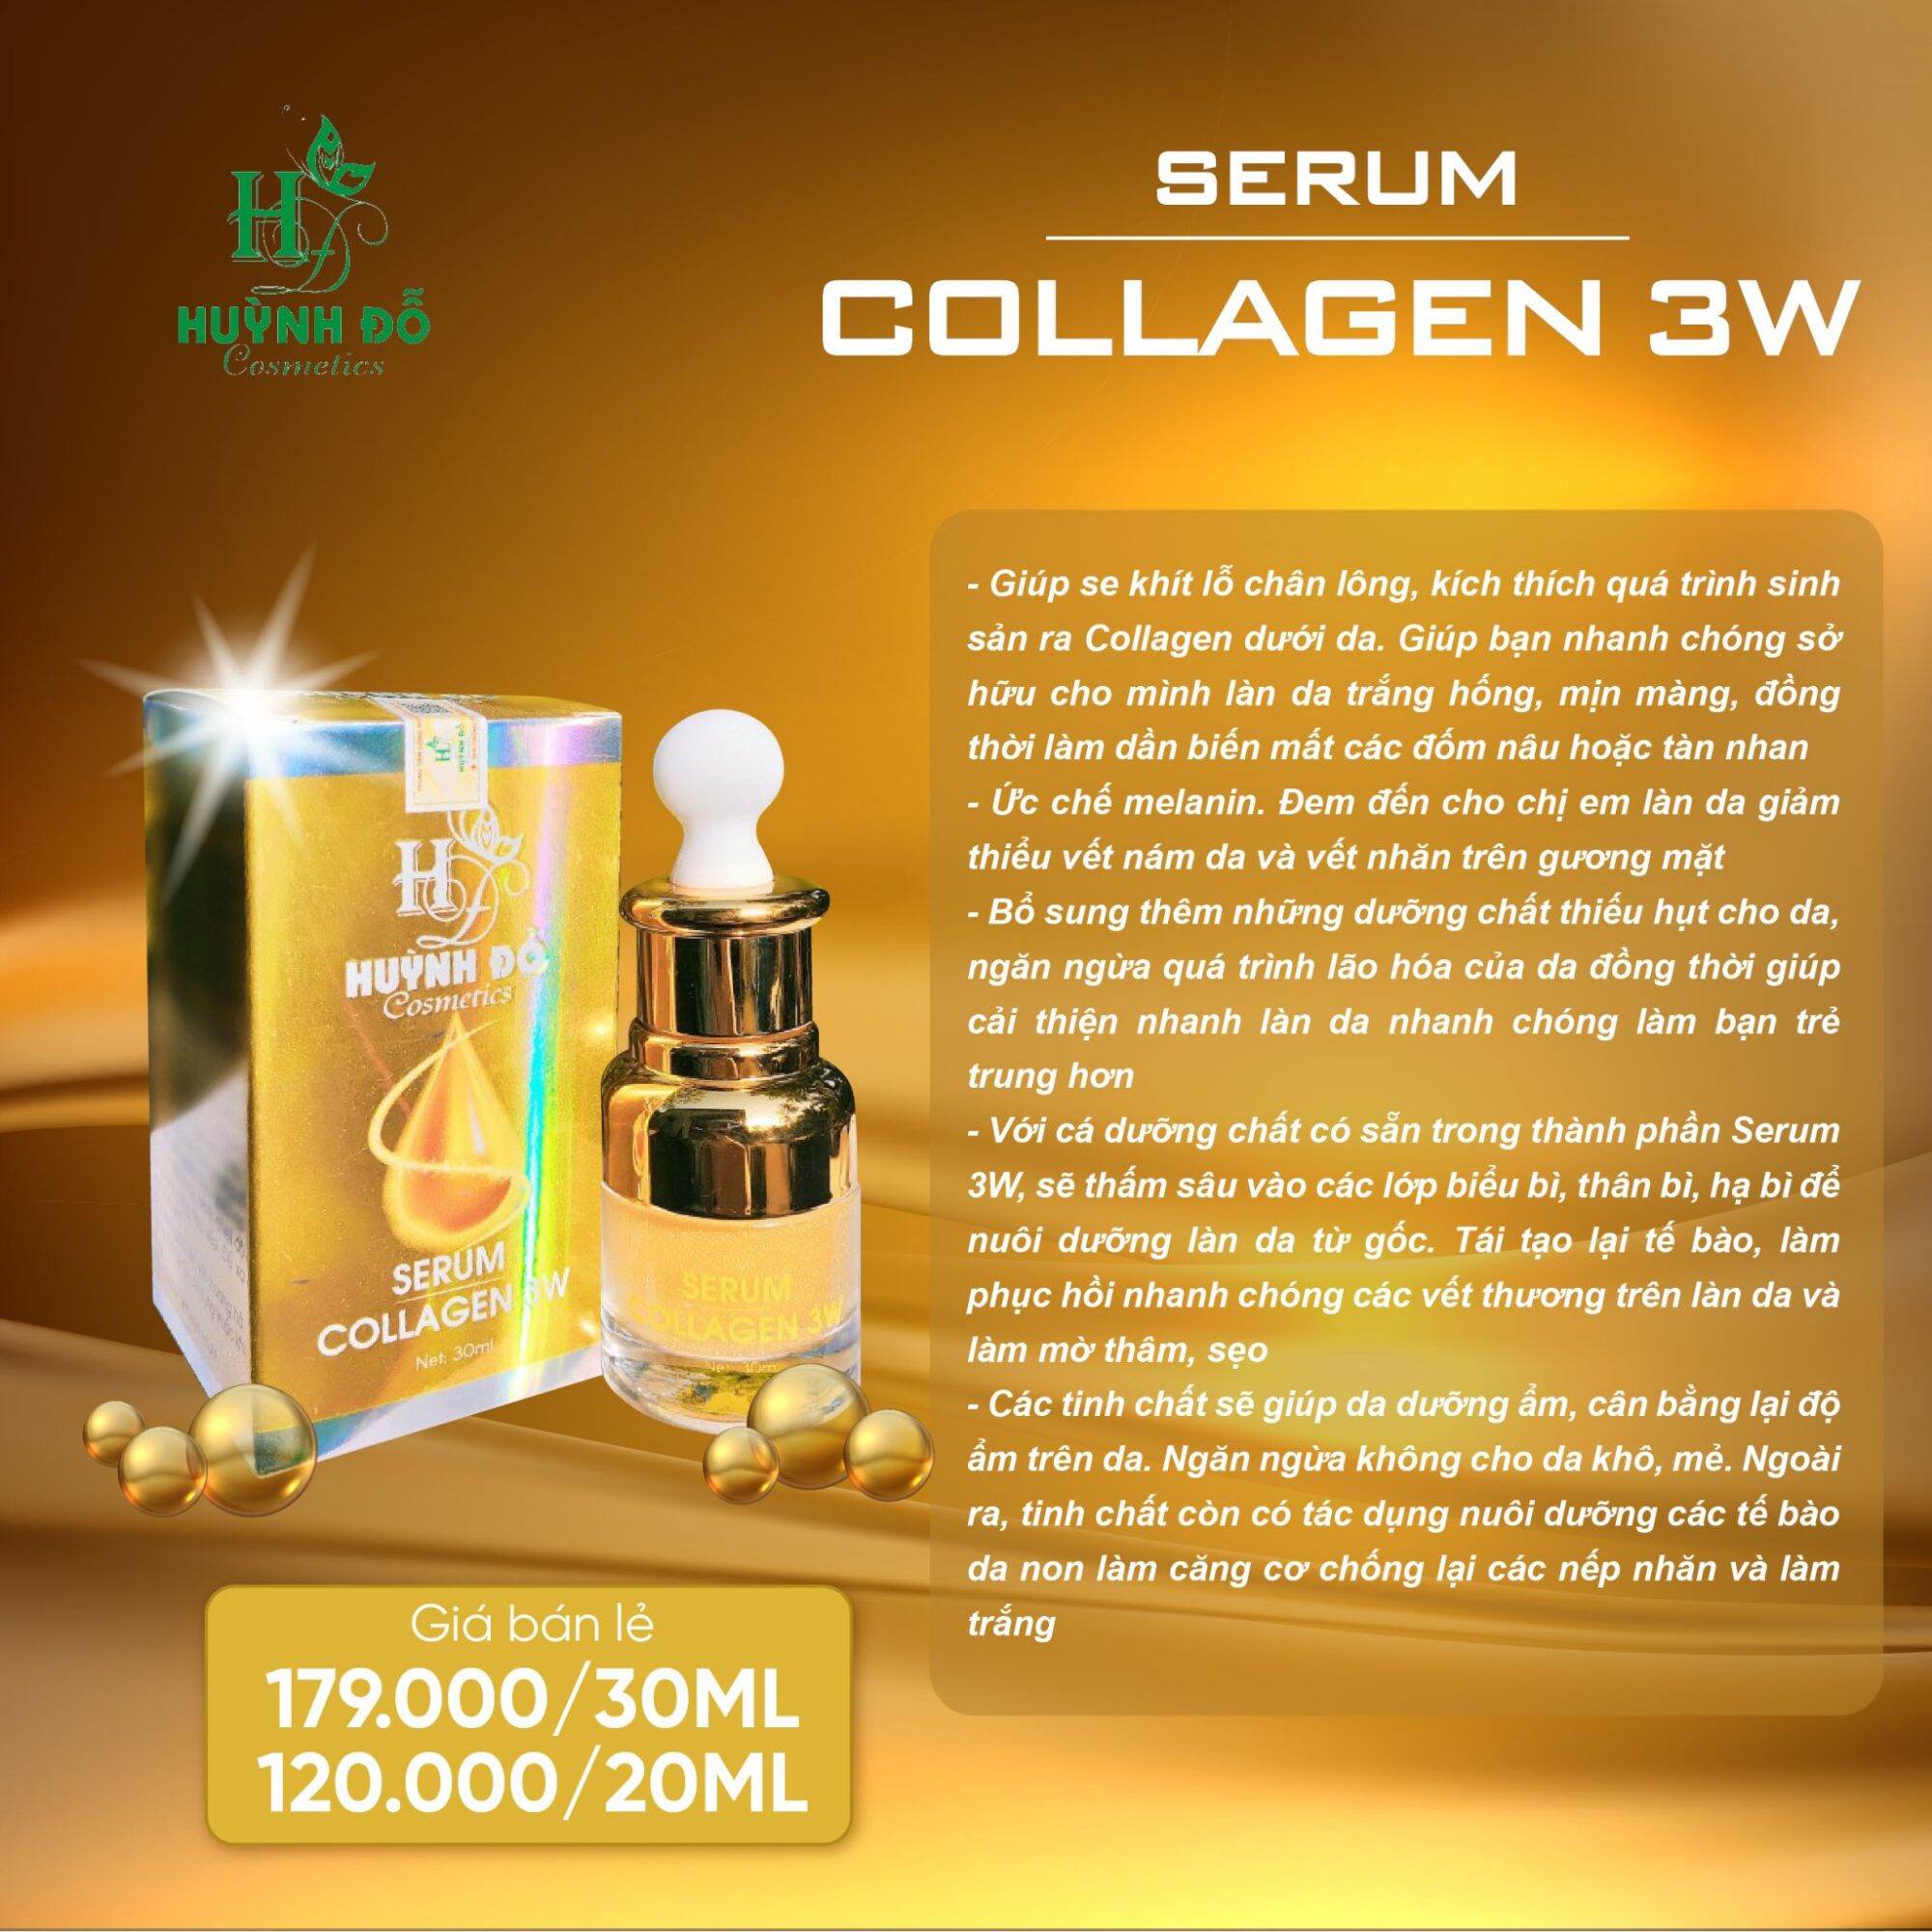 serum collagen 3w